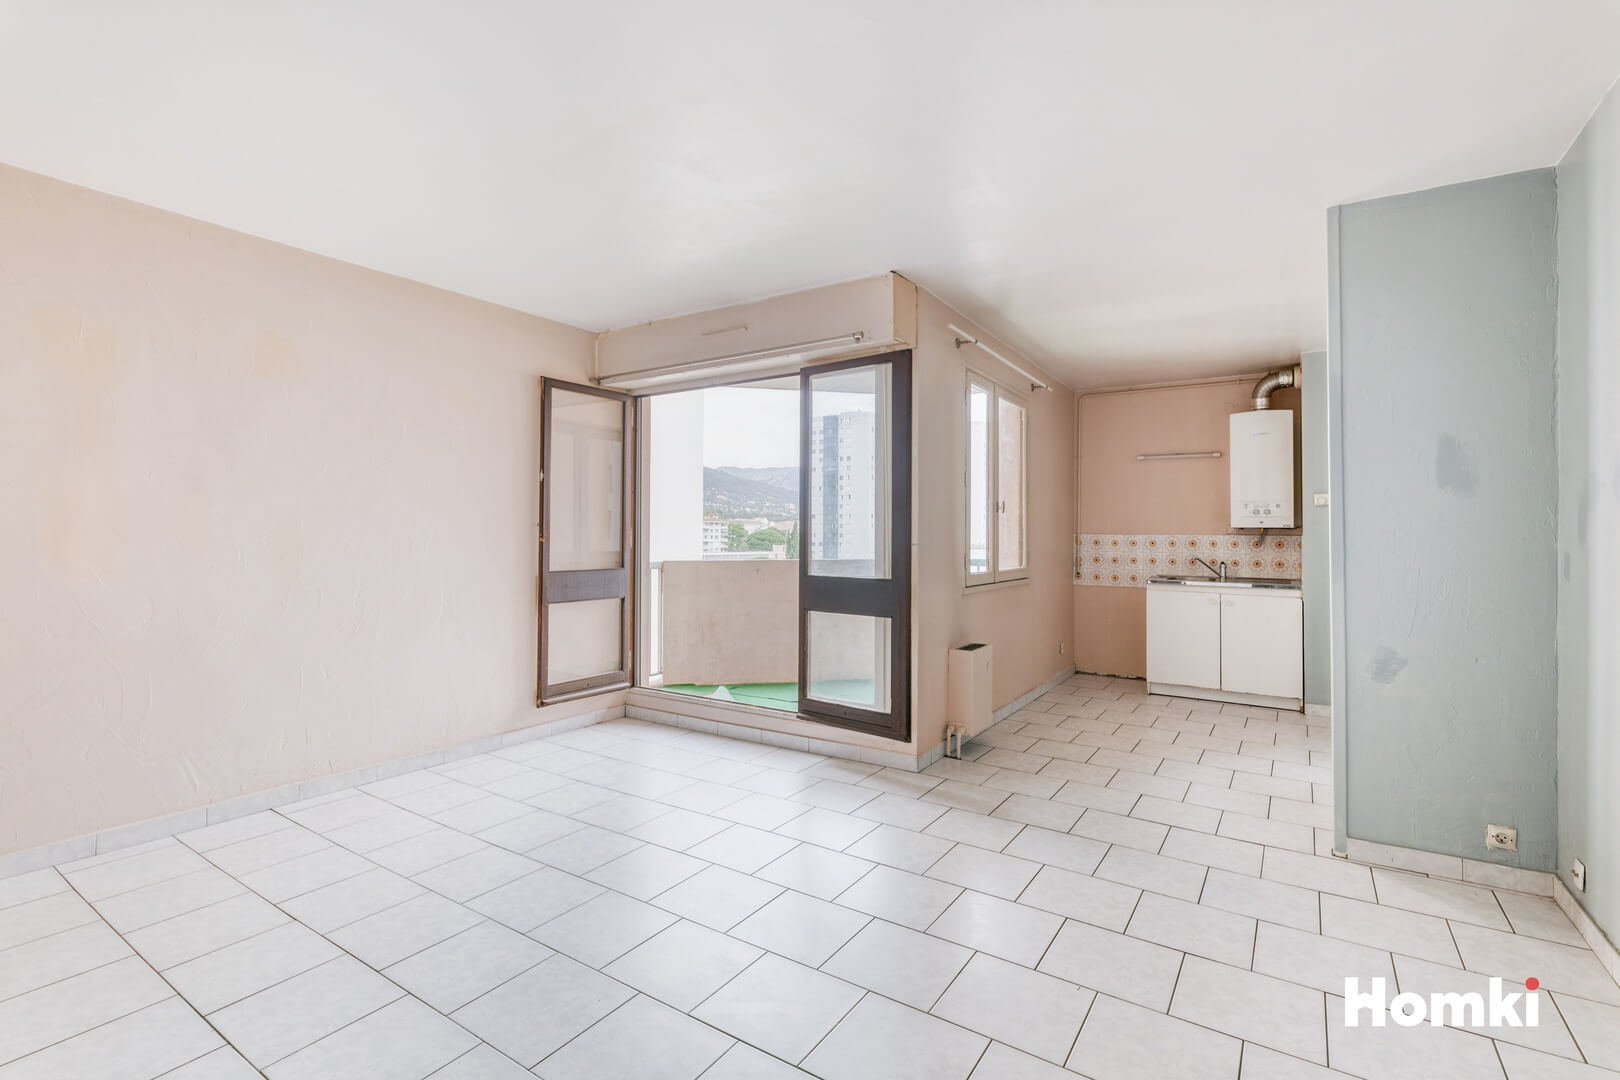 Homki - Vente Appartement  de 33.0 m² à Toulon 83000